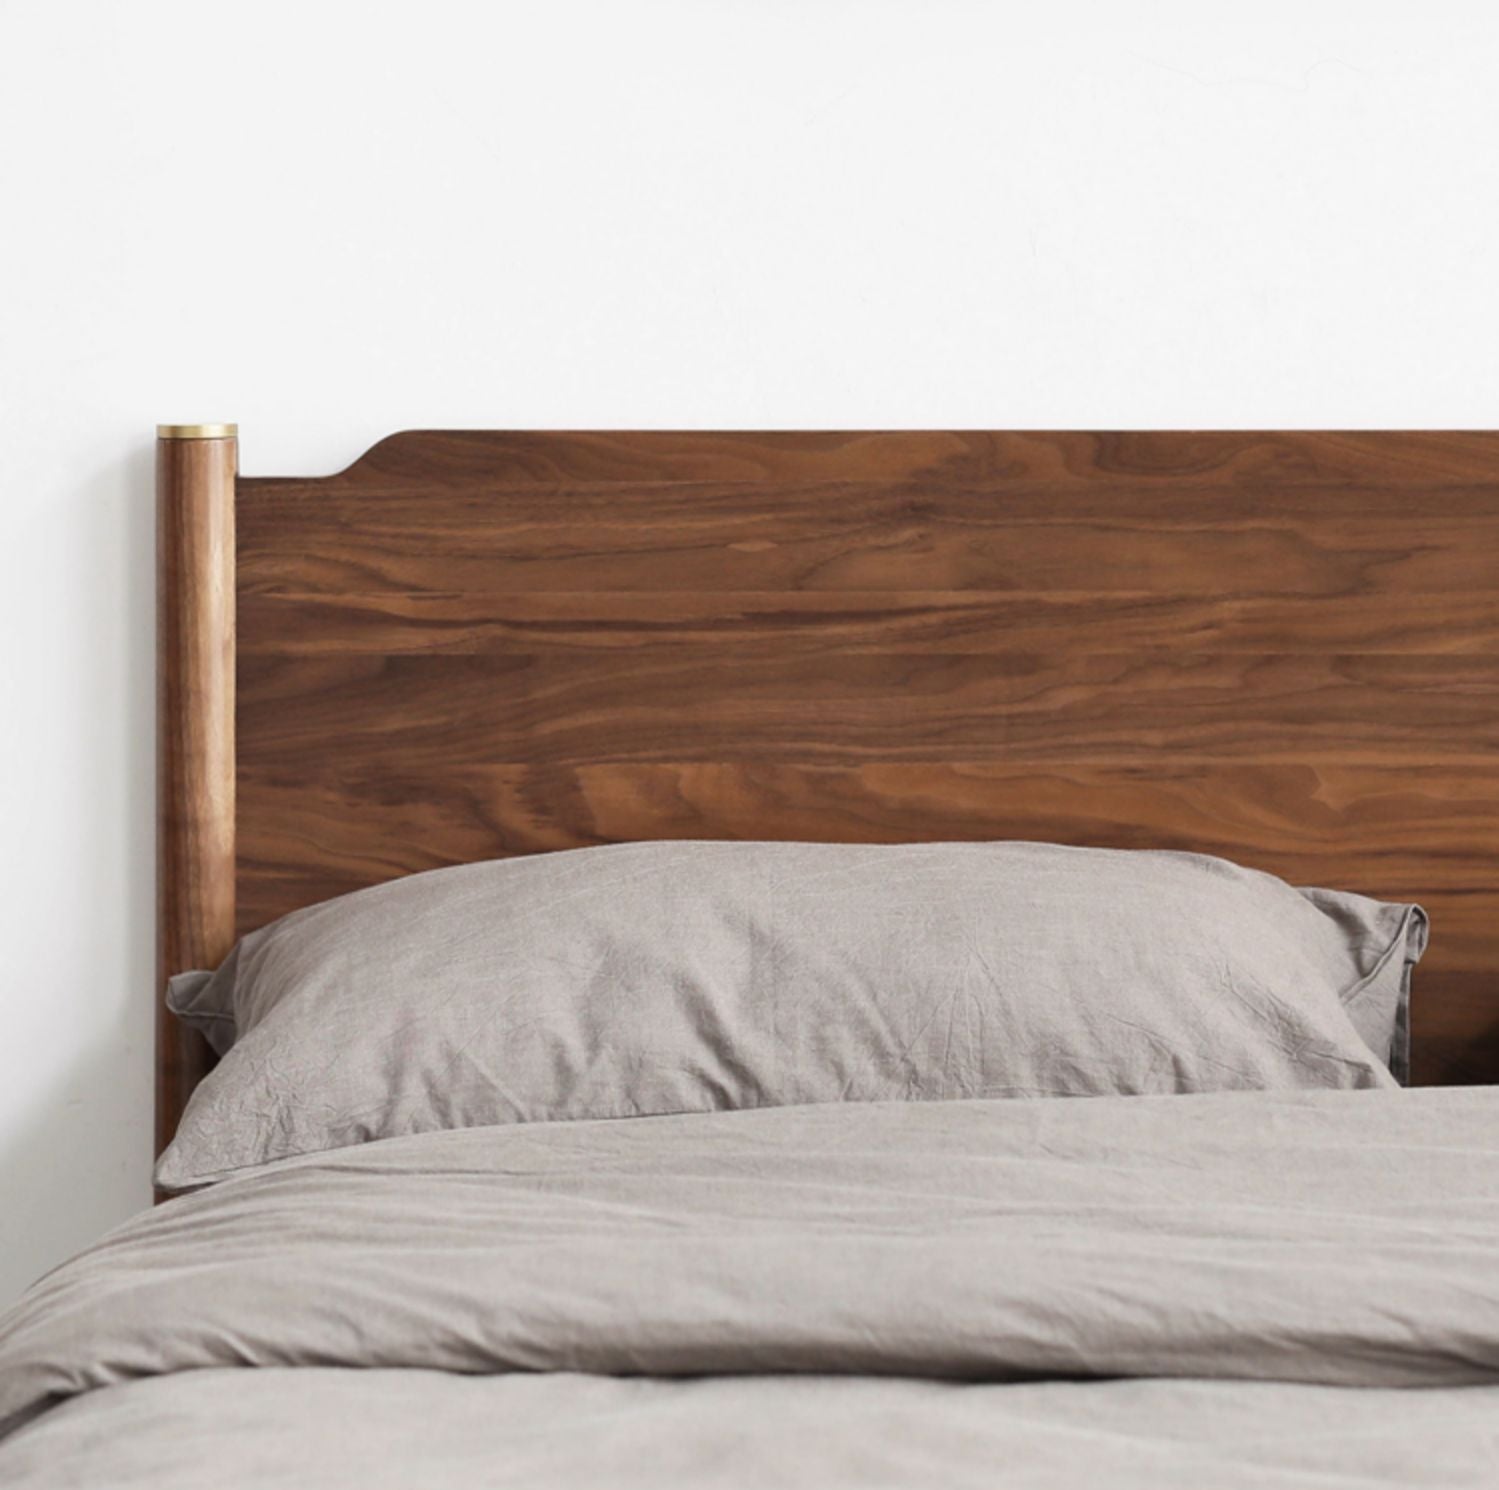 سرير ملكي من خشب الجوز الصلب، سرير مغزلي من خشب الجوز، سرير من خشب الجوز